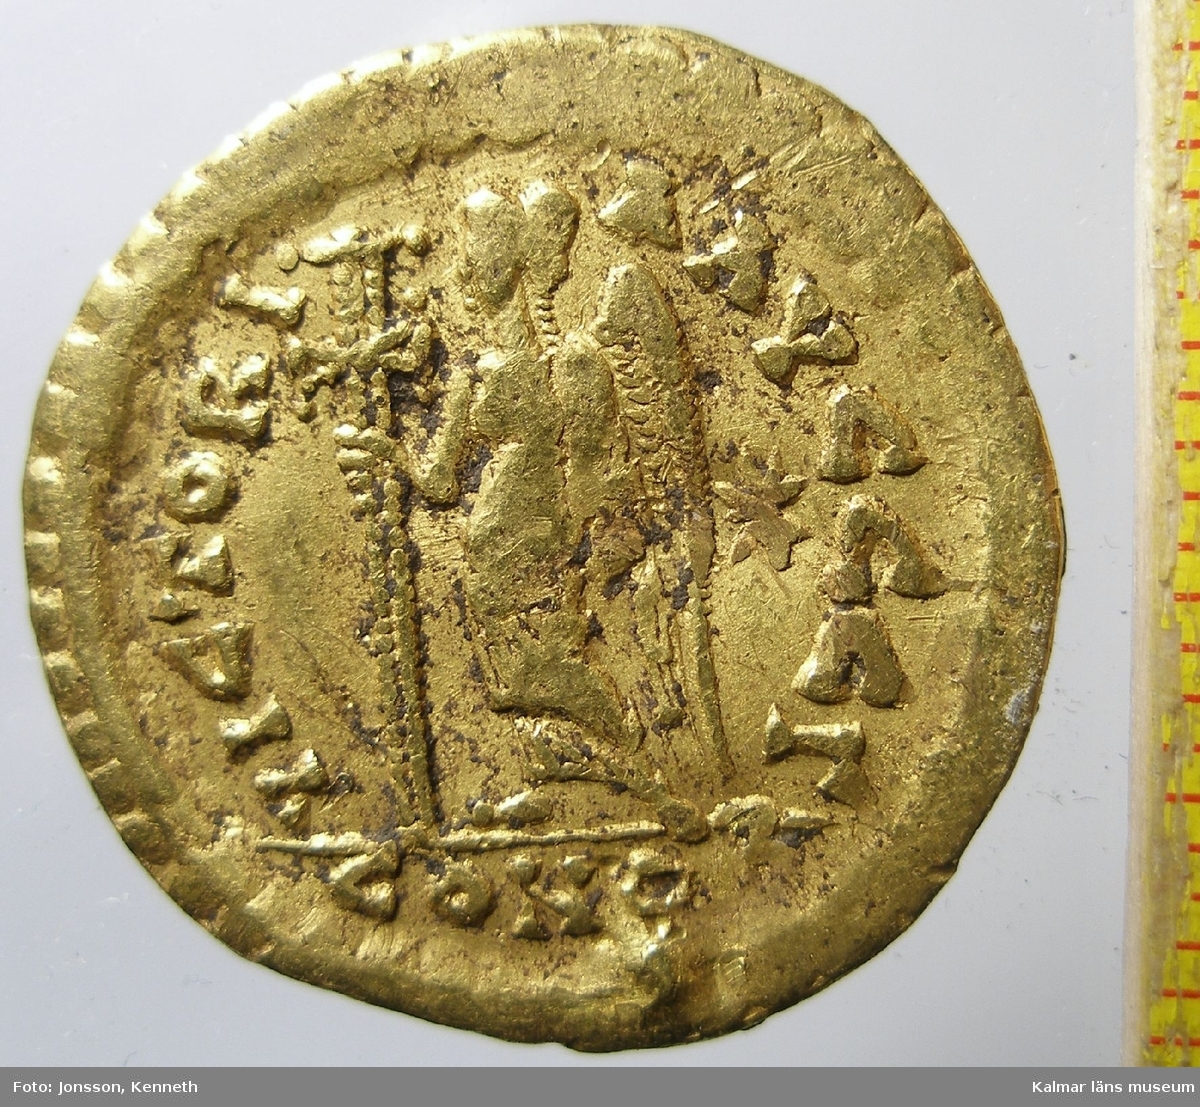 KLM 25384 Mynt, solidi, guld. Präglat för Leo I (457-474). Bestämning: F 411, RICX605.